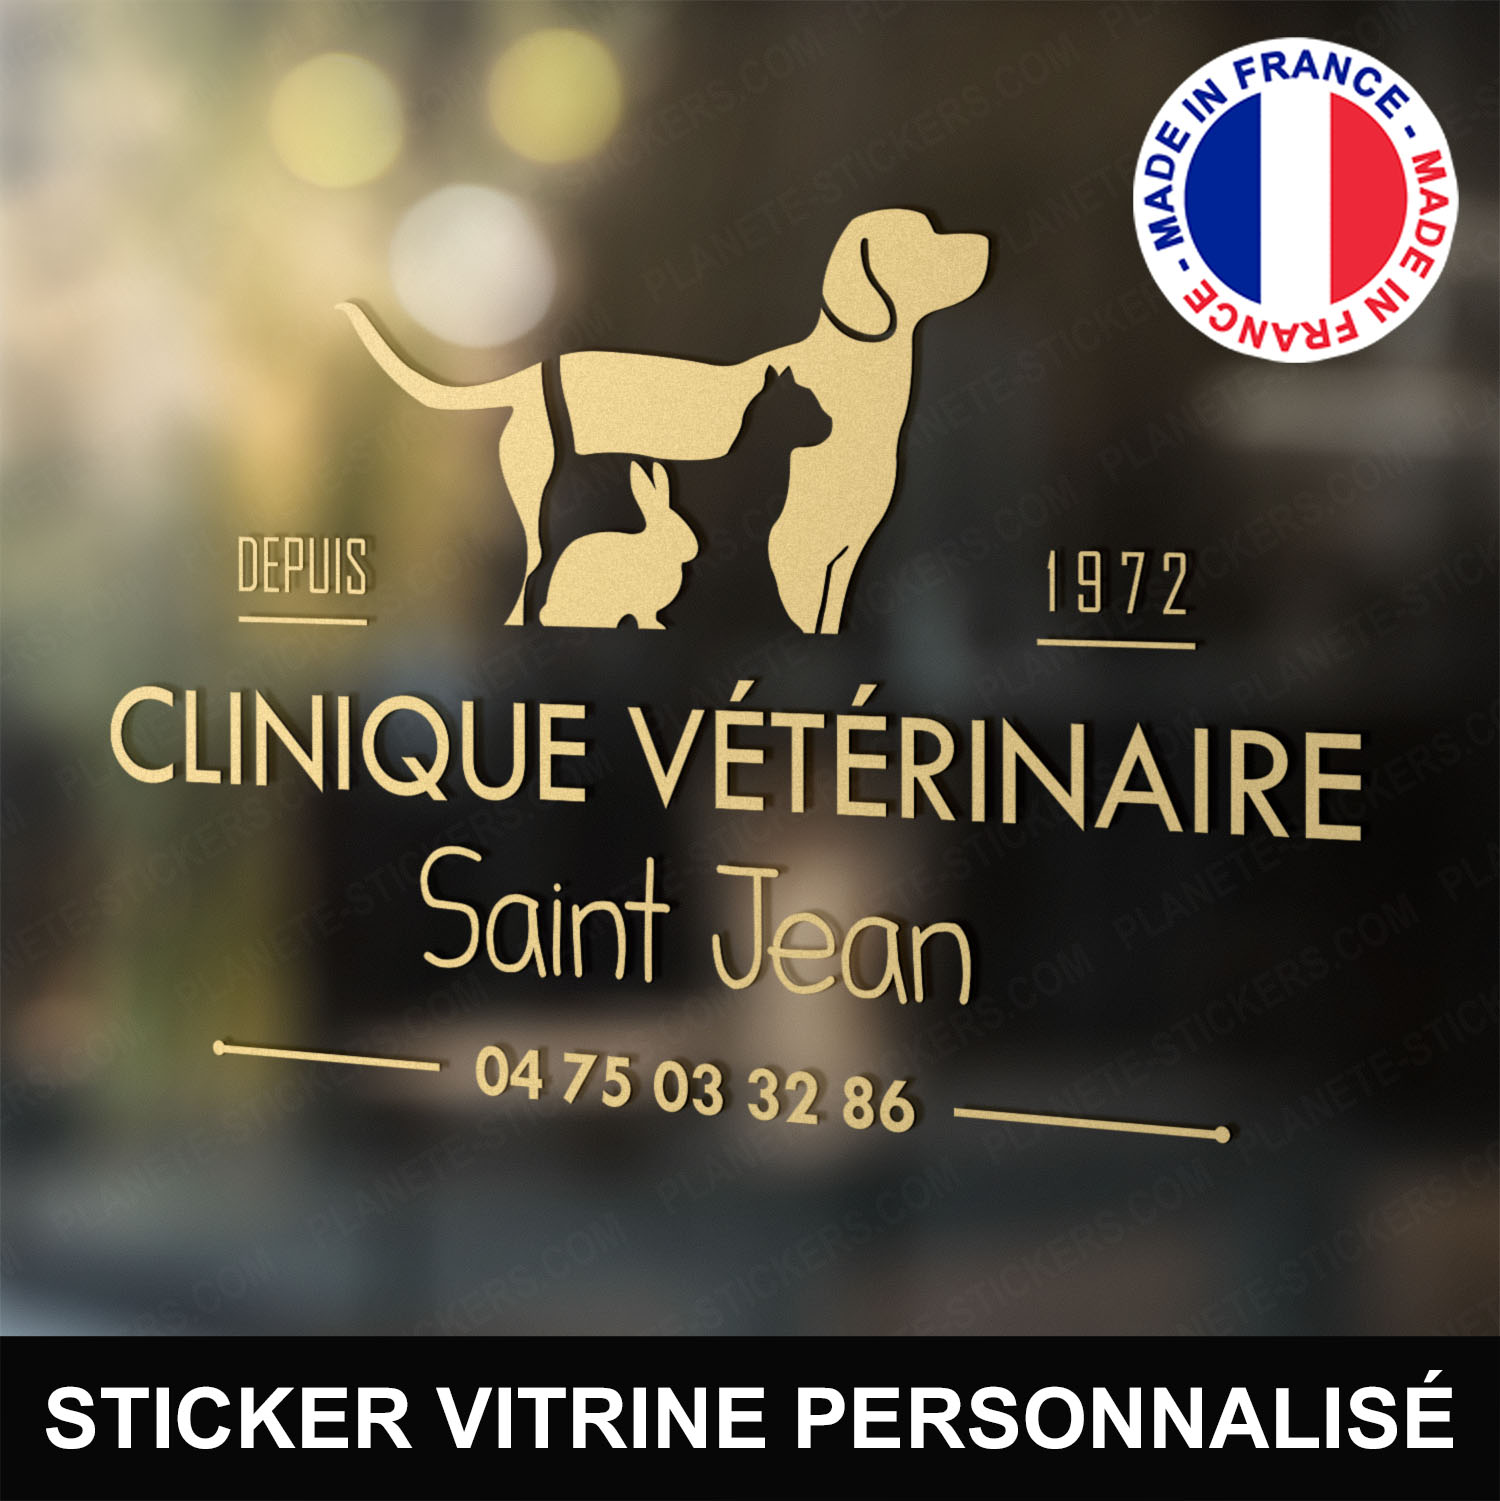 ref9veterinairevitrine-stickers-clinique-vétérinaire-vitrine-sticker-personnalisé-autocollant-pro-veterinaire-professionnel